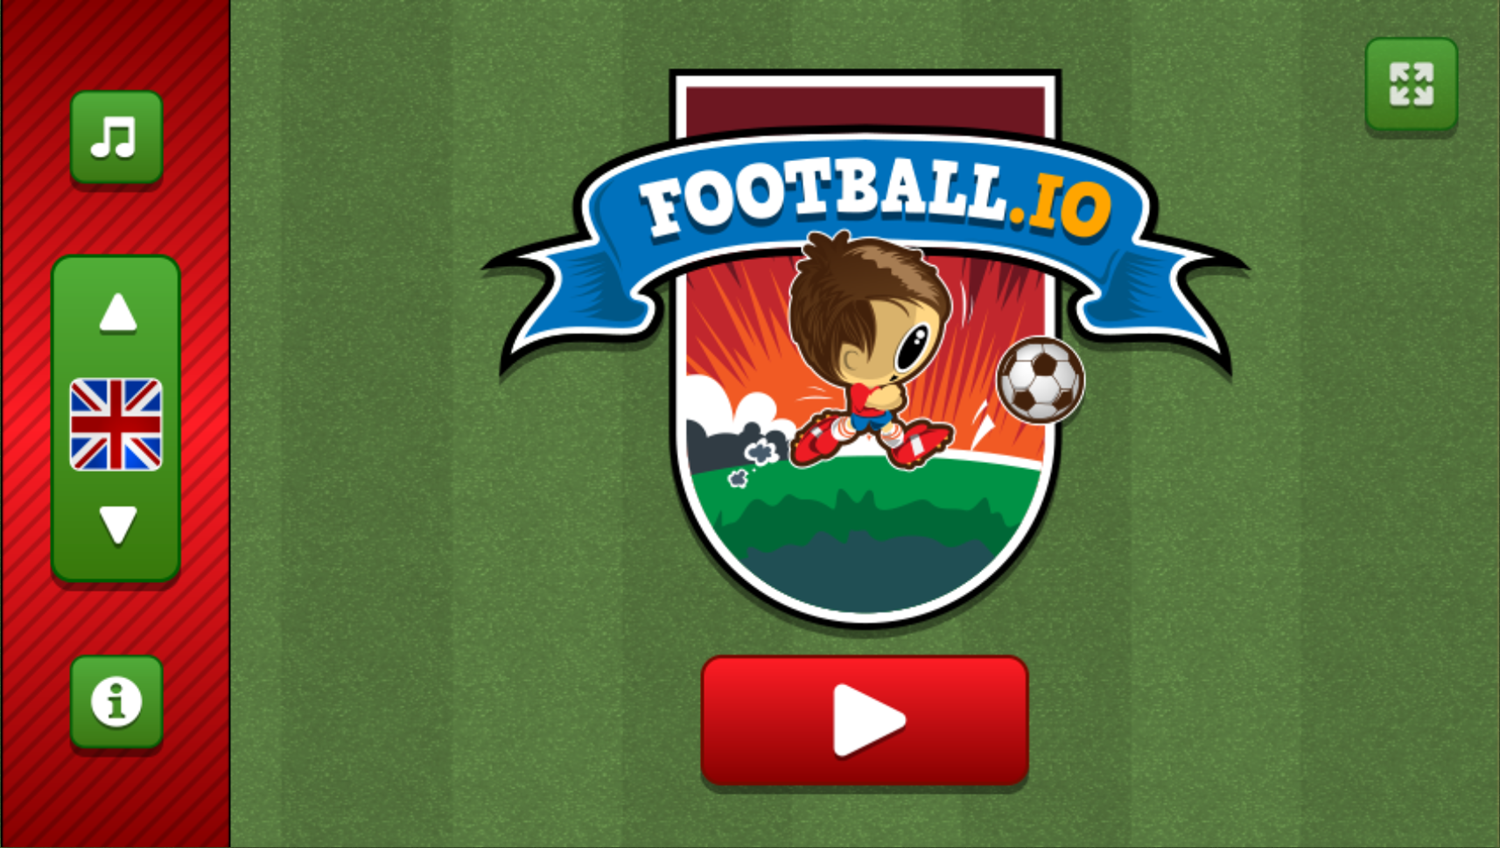 Football.io Game Welcome Screen Screenshot.